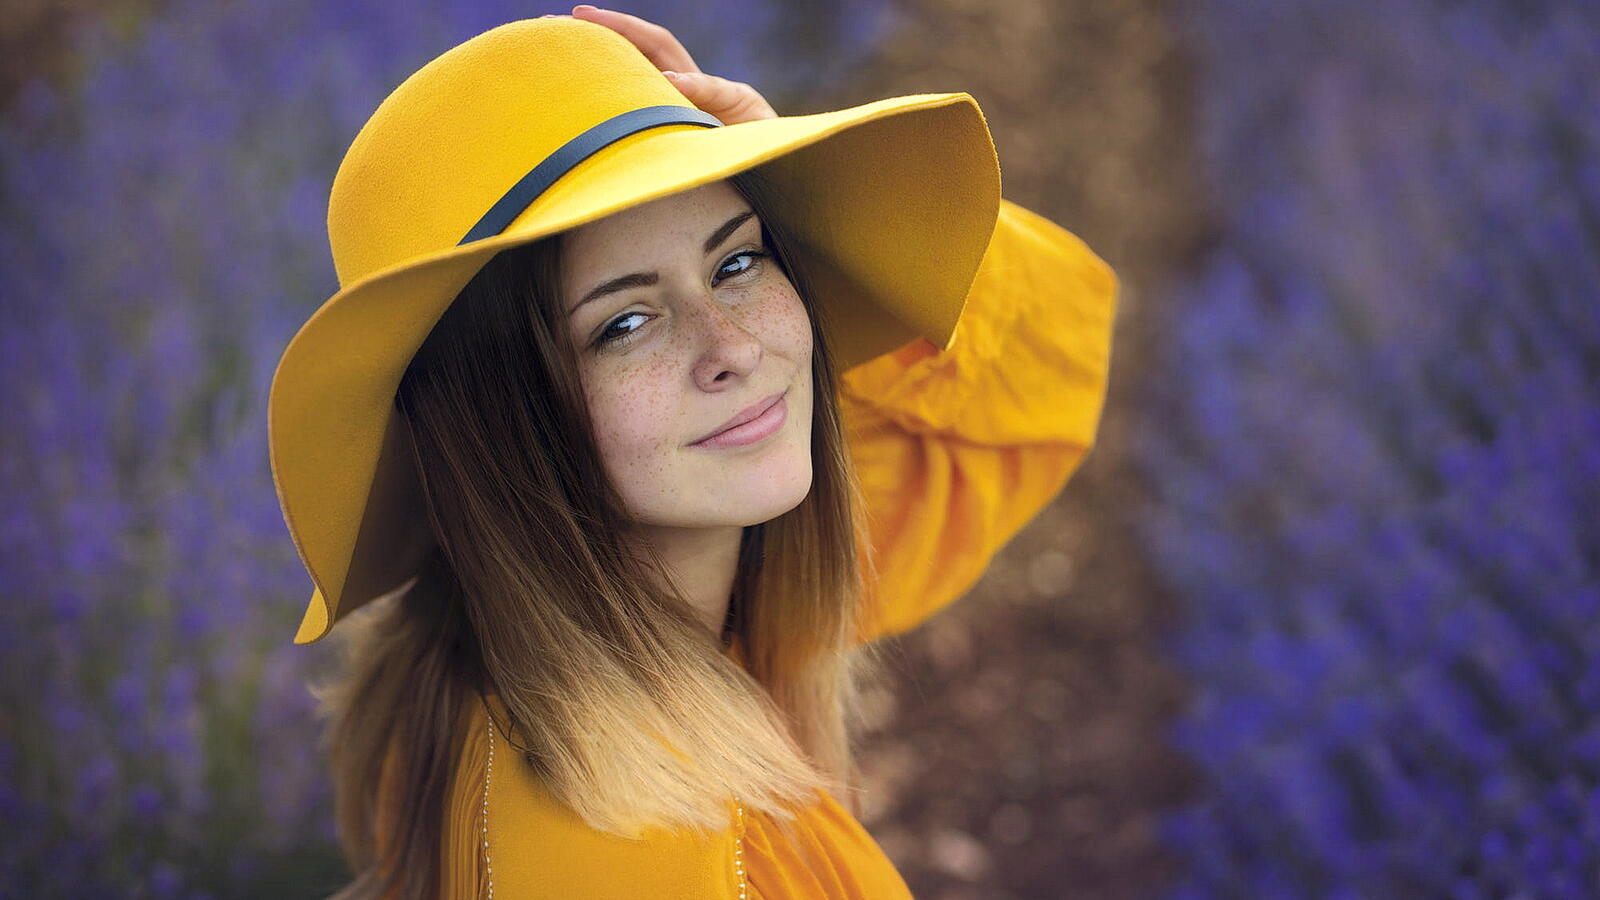 Бесплатное фото Конопатая девушка в желтом костюме с желтой шляпой